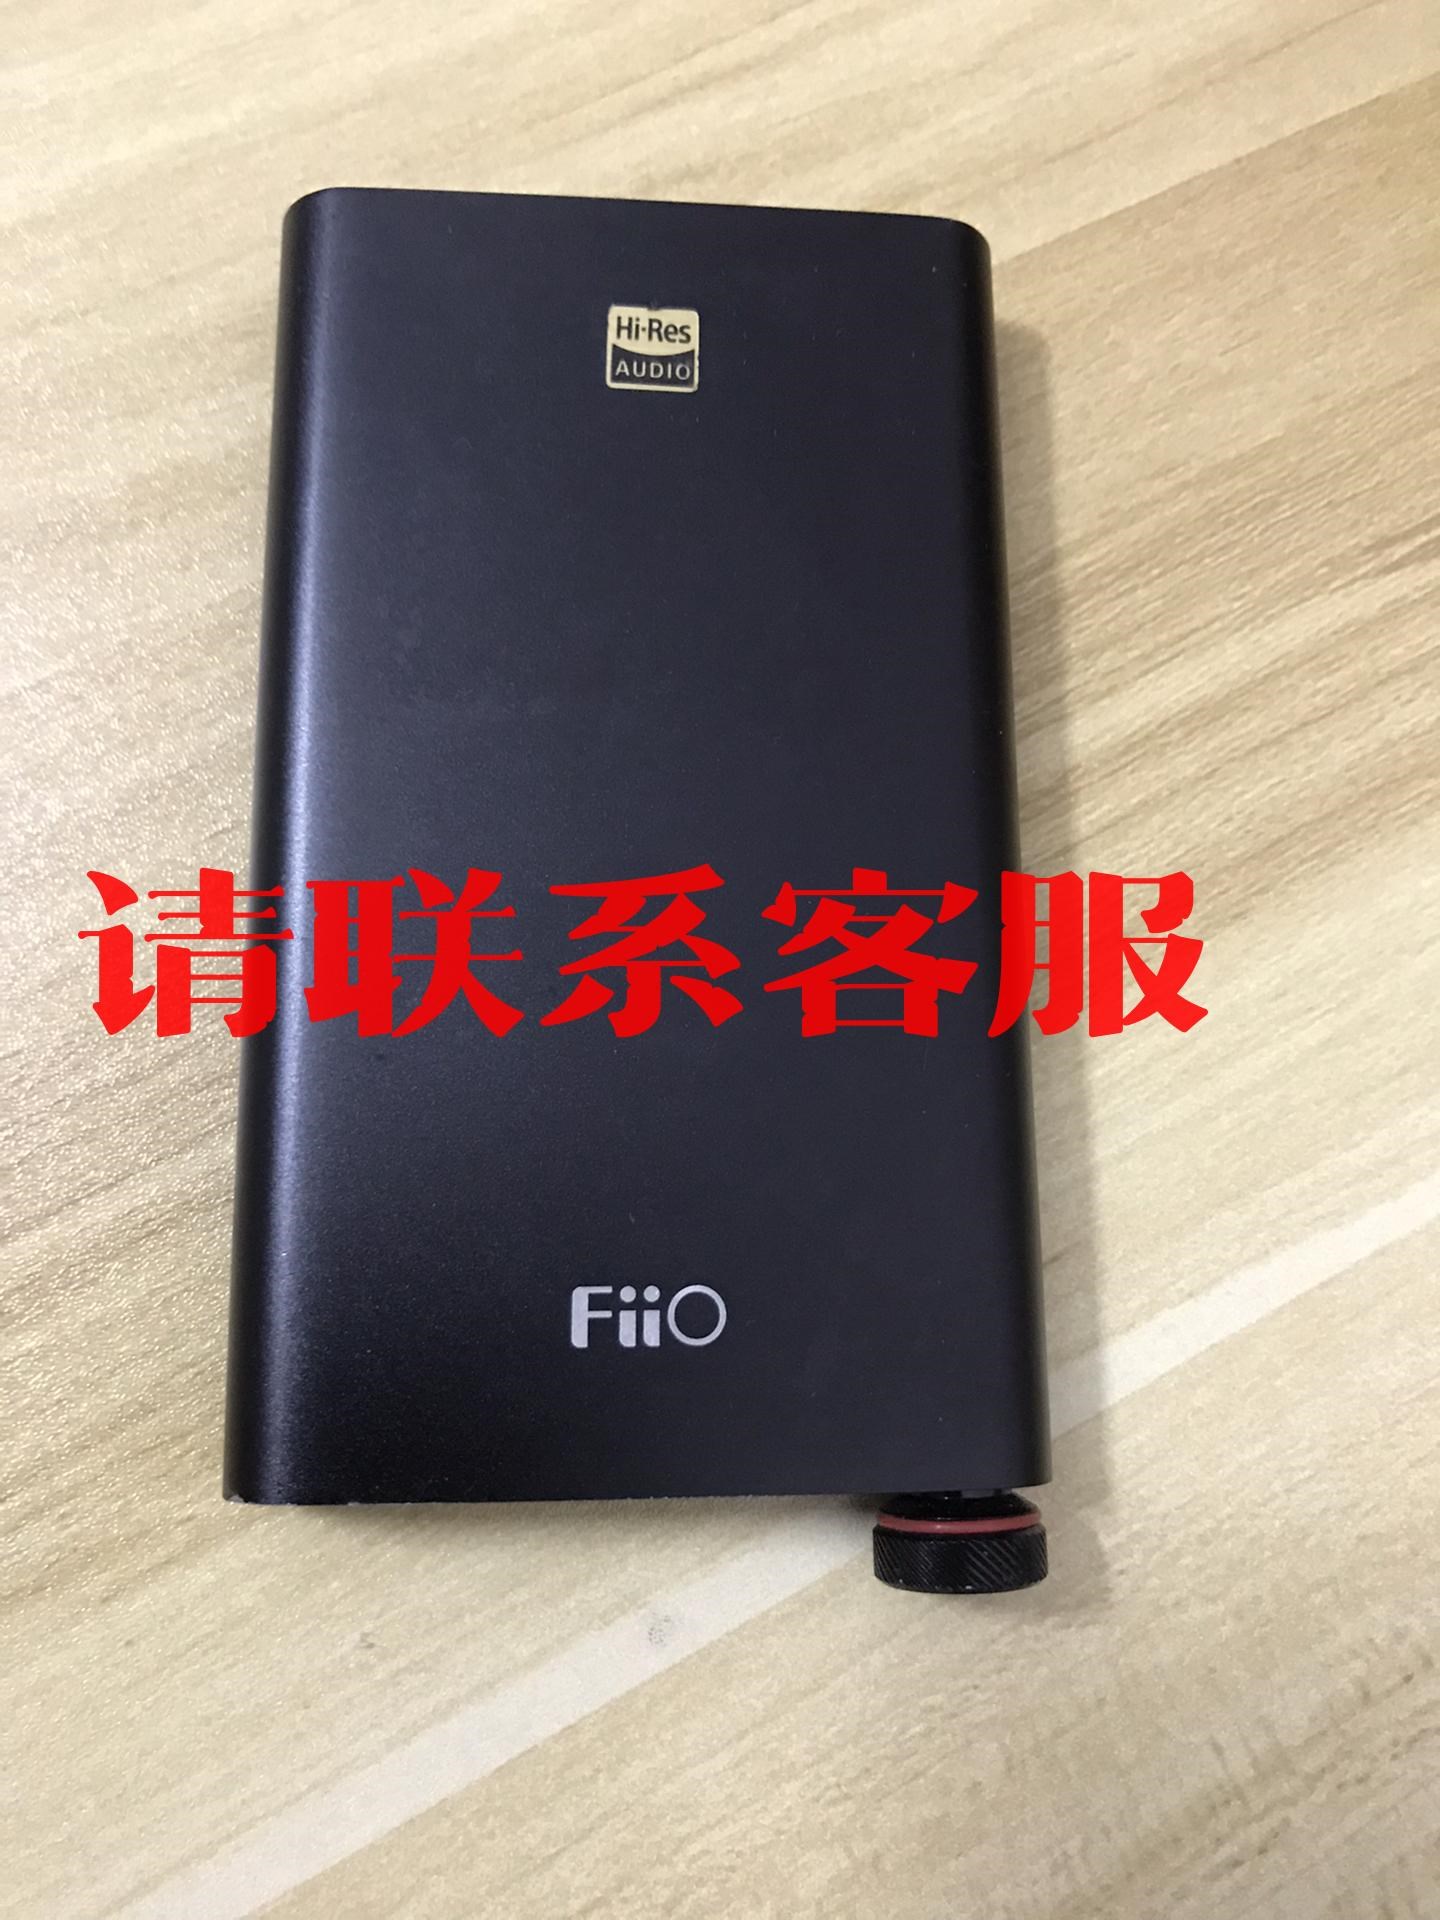 议价:FiiO飞傲 FQ1222耳放飞傲便携式耳放，成色如图，